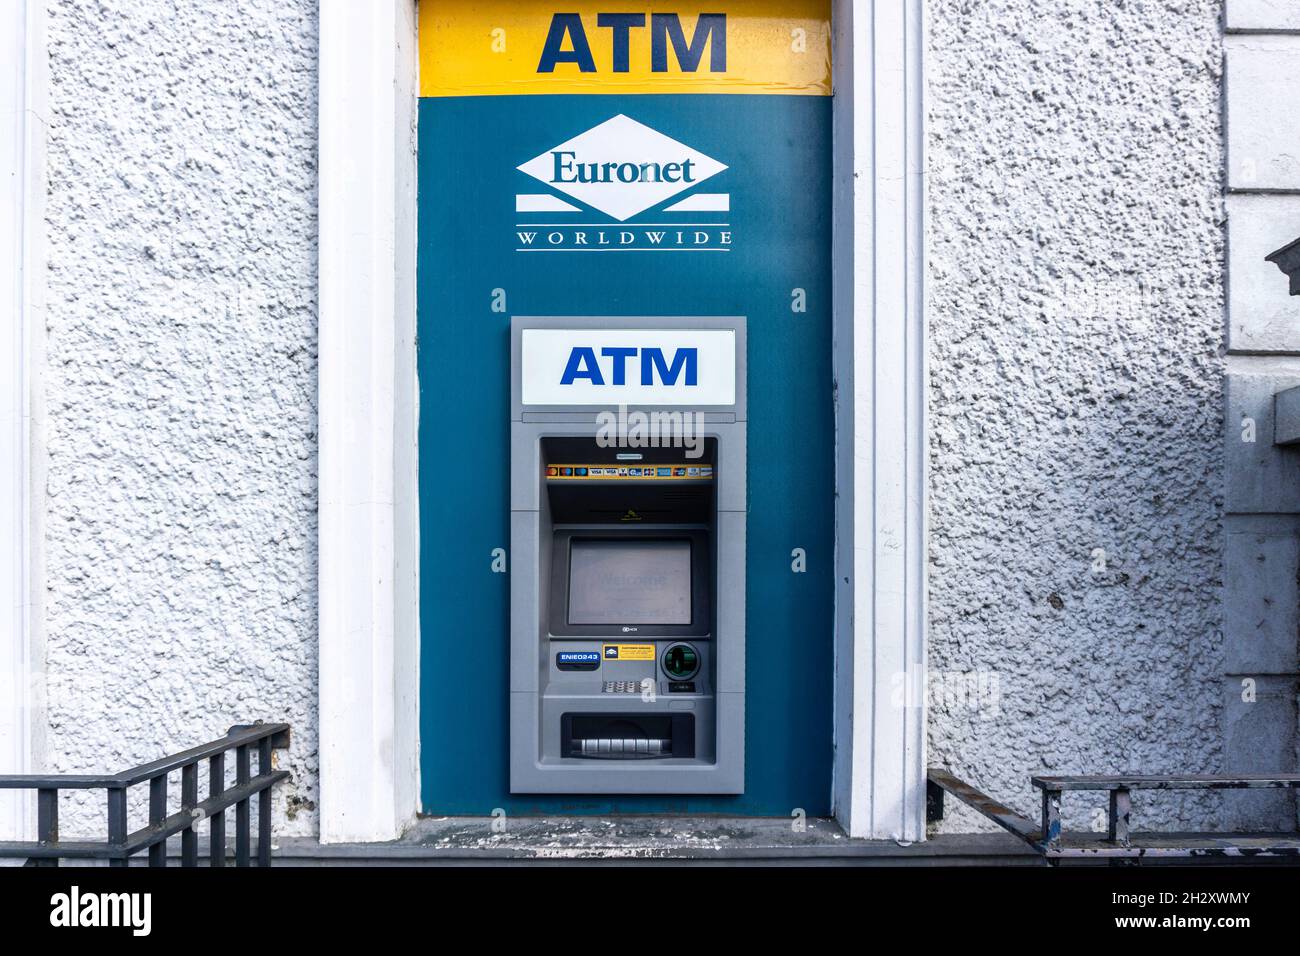 A Euronet ATM a Edgeworthstown, County Longford, Irlanda. Euronet è un fornitore americano con sede centrale di servizi di pagamento elettronico. Foto Stock